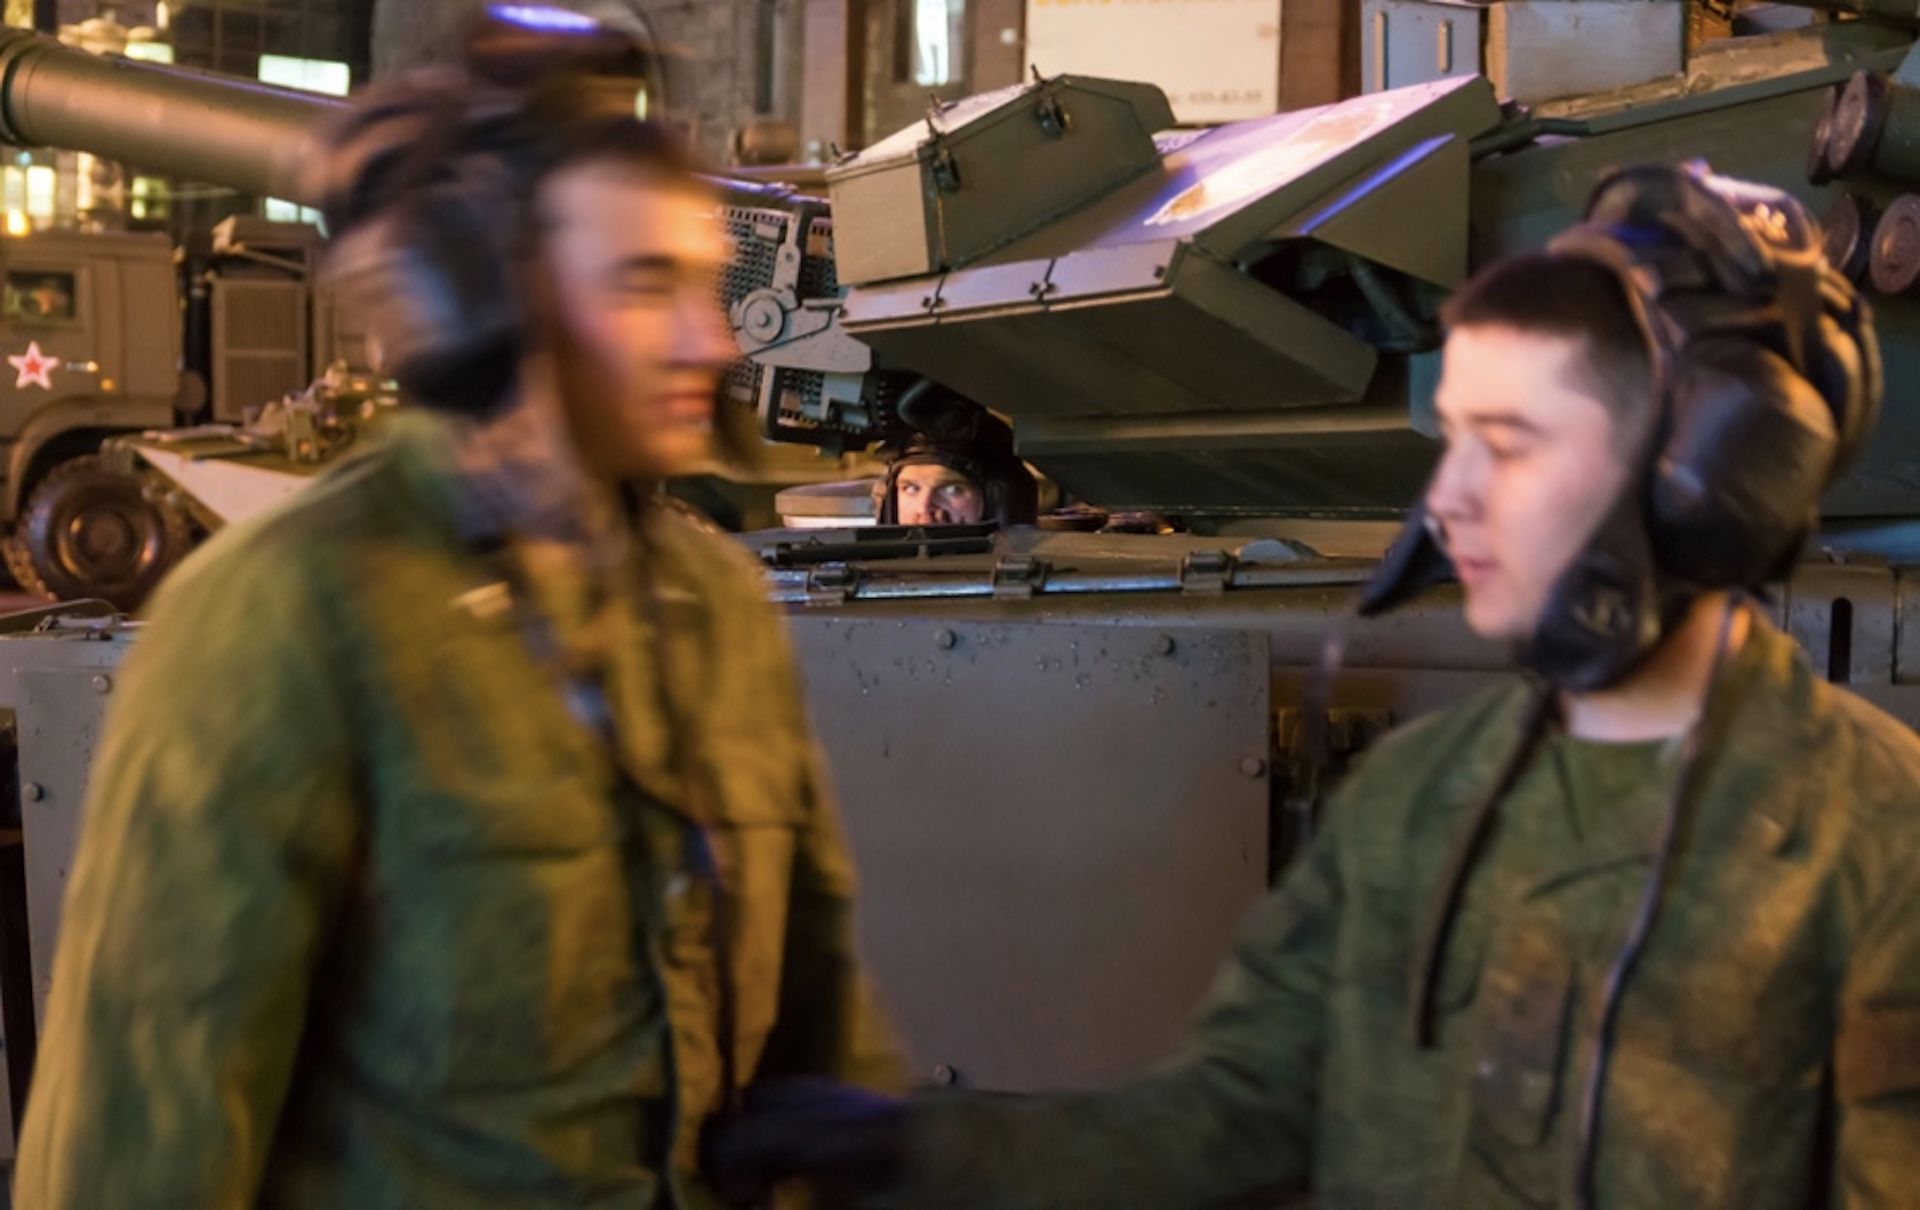 Rosyjski żołnierz w rozmowie z matką wyznał, że będzie zabijał dzieci